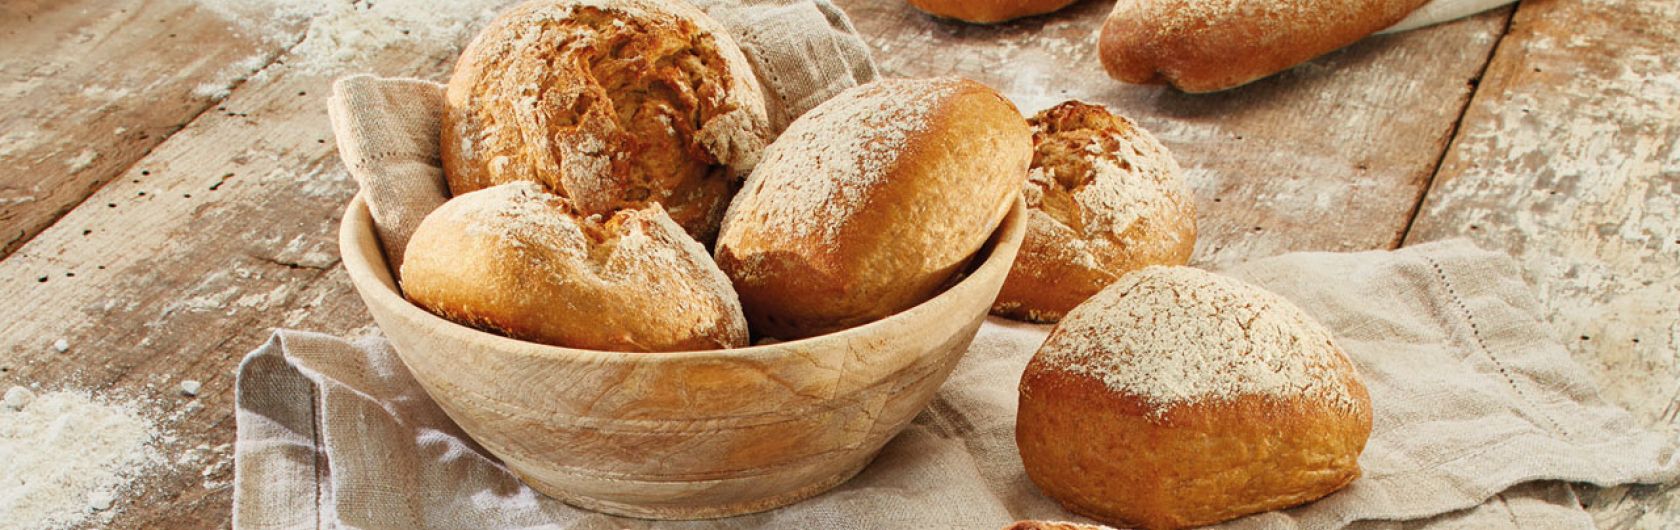 Premixes bread & bread rolls